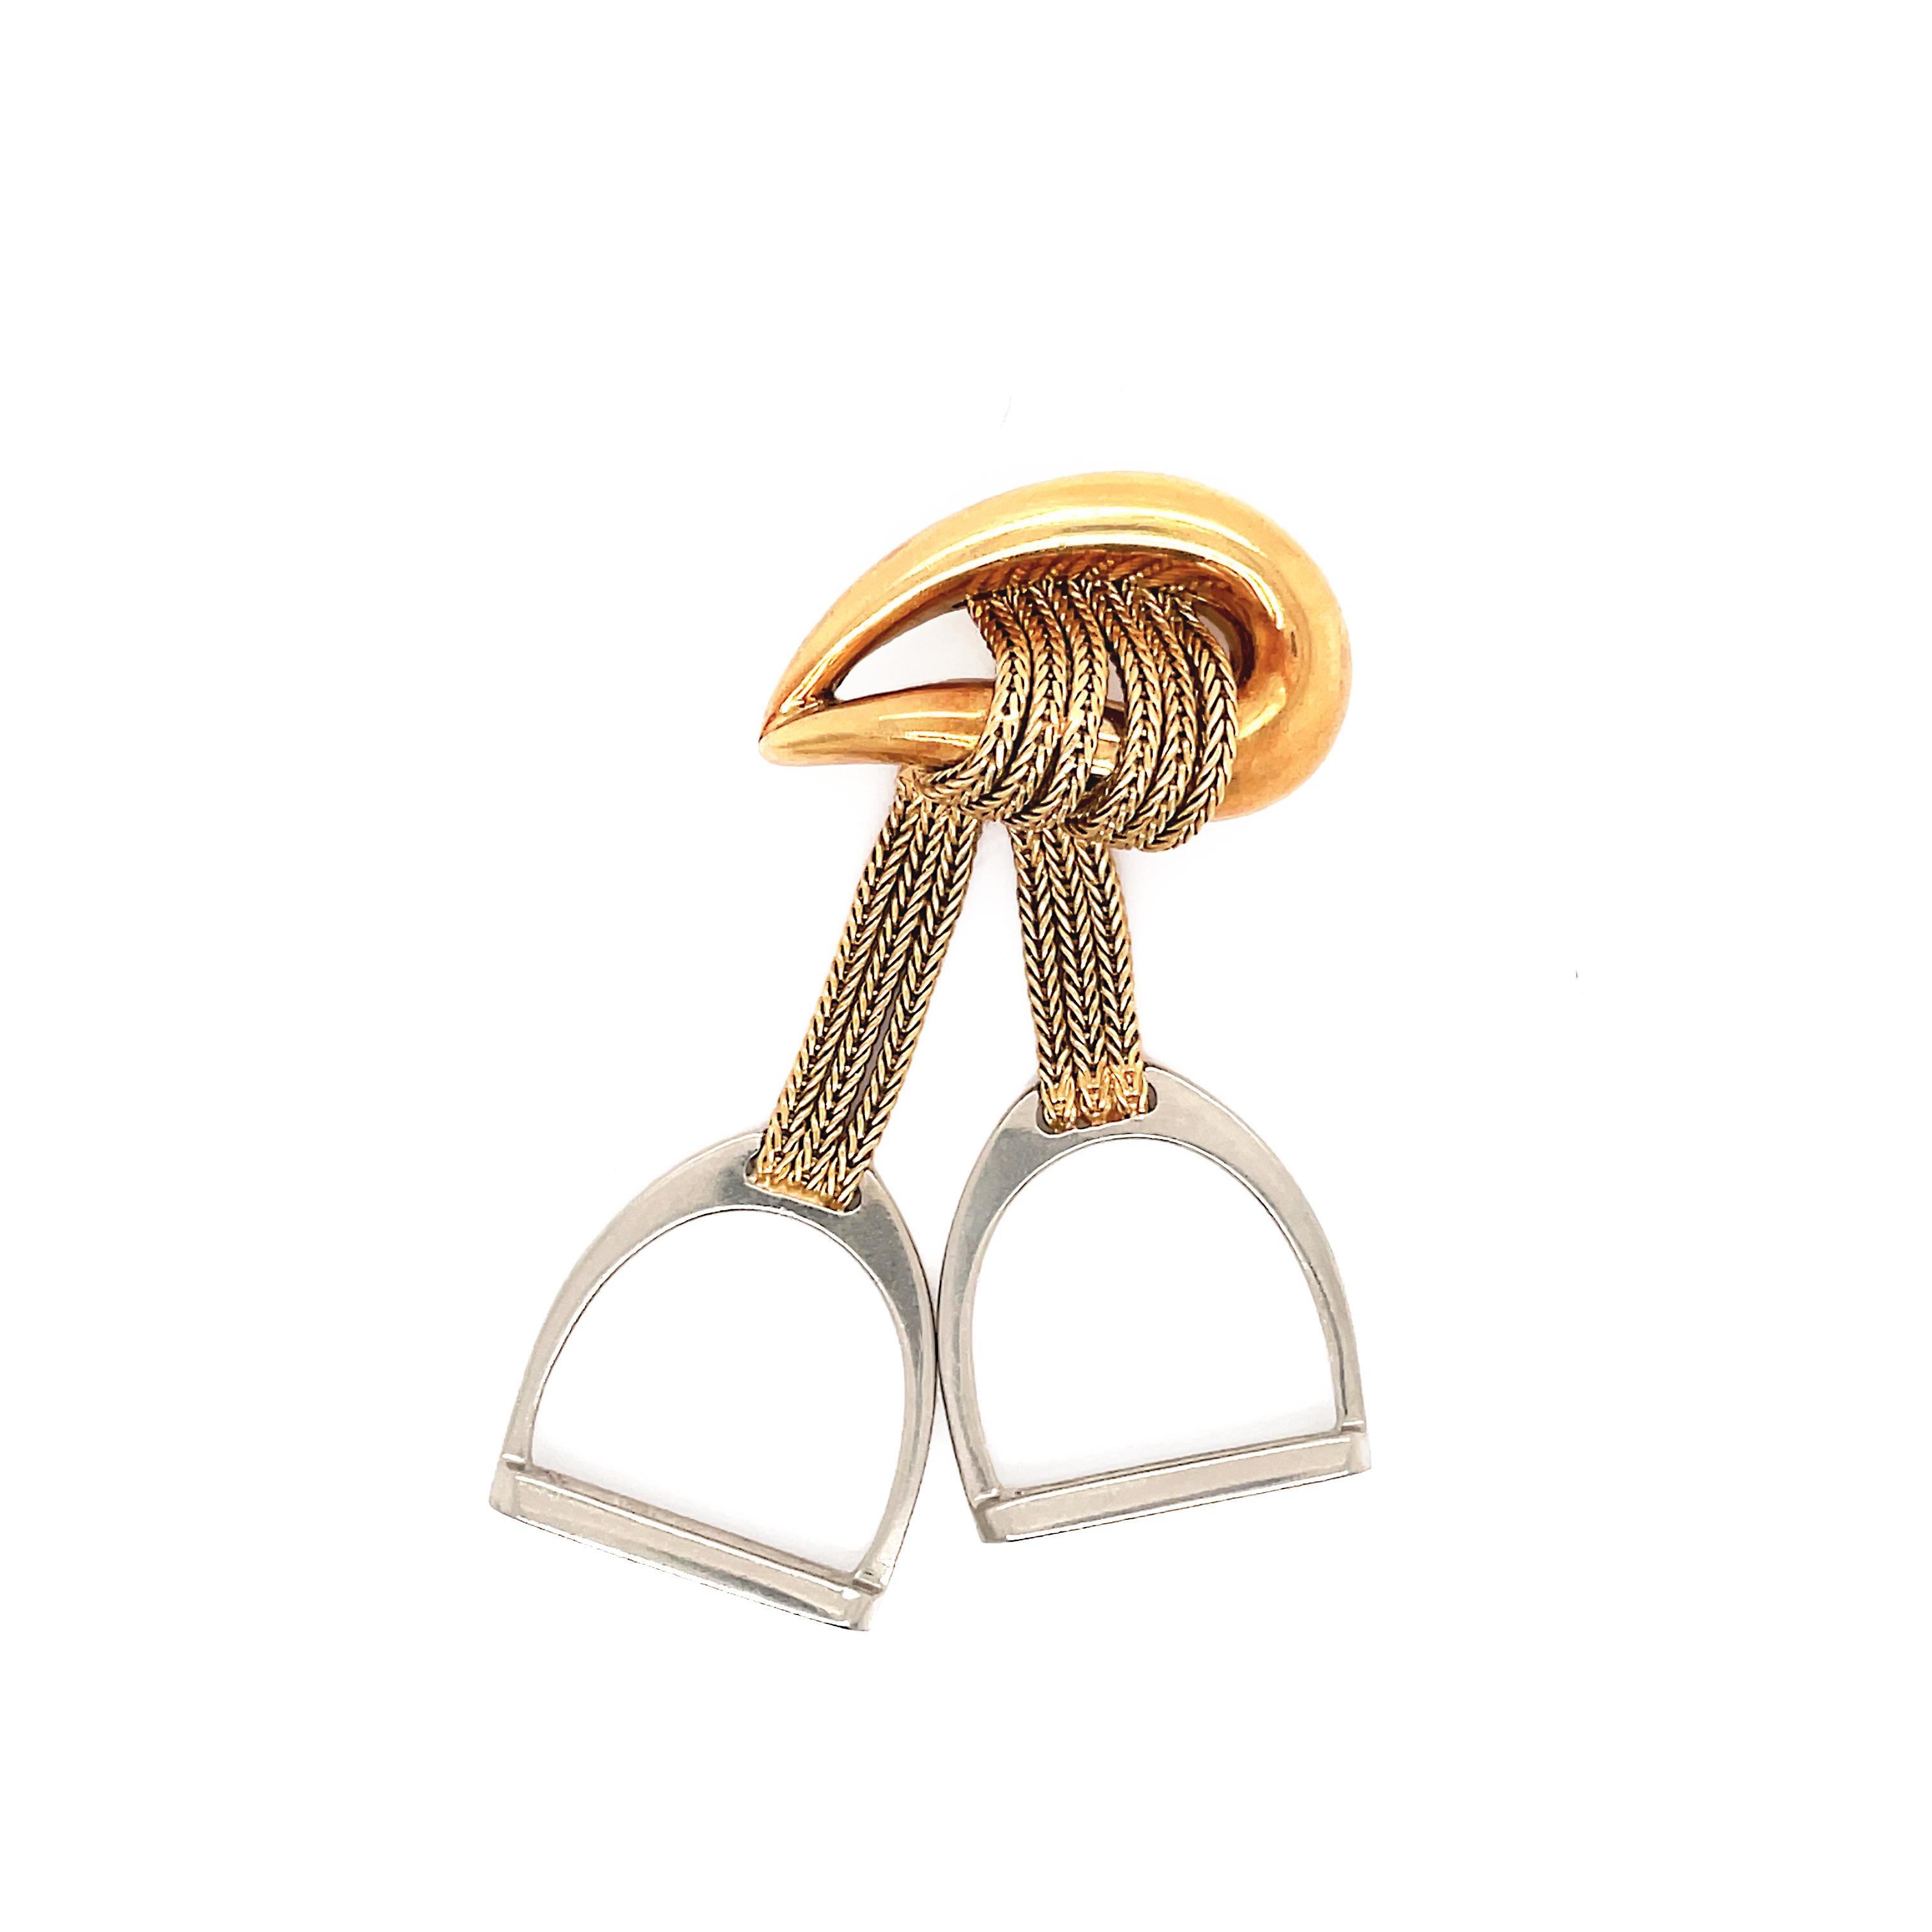 Diese seltene Vintage-Brosche aus 18-karätigem Gold von HERMES ist ein typisches Beispiel für die Ästhetik des Pferdedesigns der französischen Marke. An einer tränenförmigen Brosche hängen zwei Stränge einer Gelbgoldkette, die an zwei massiven